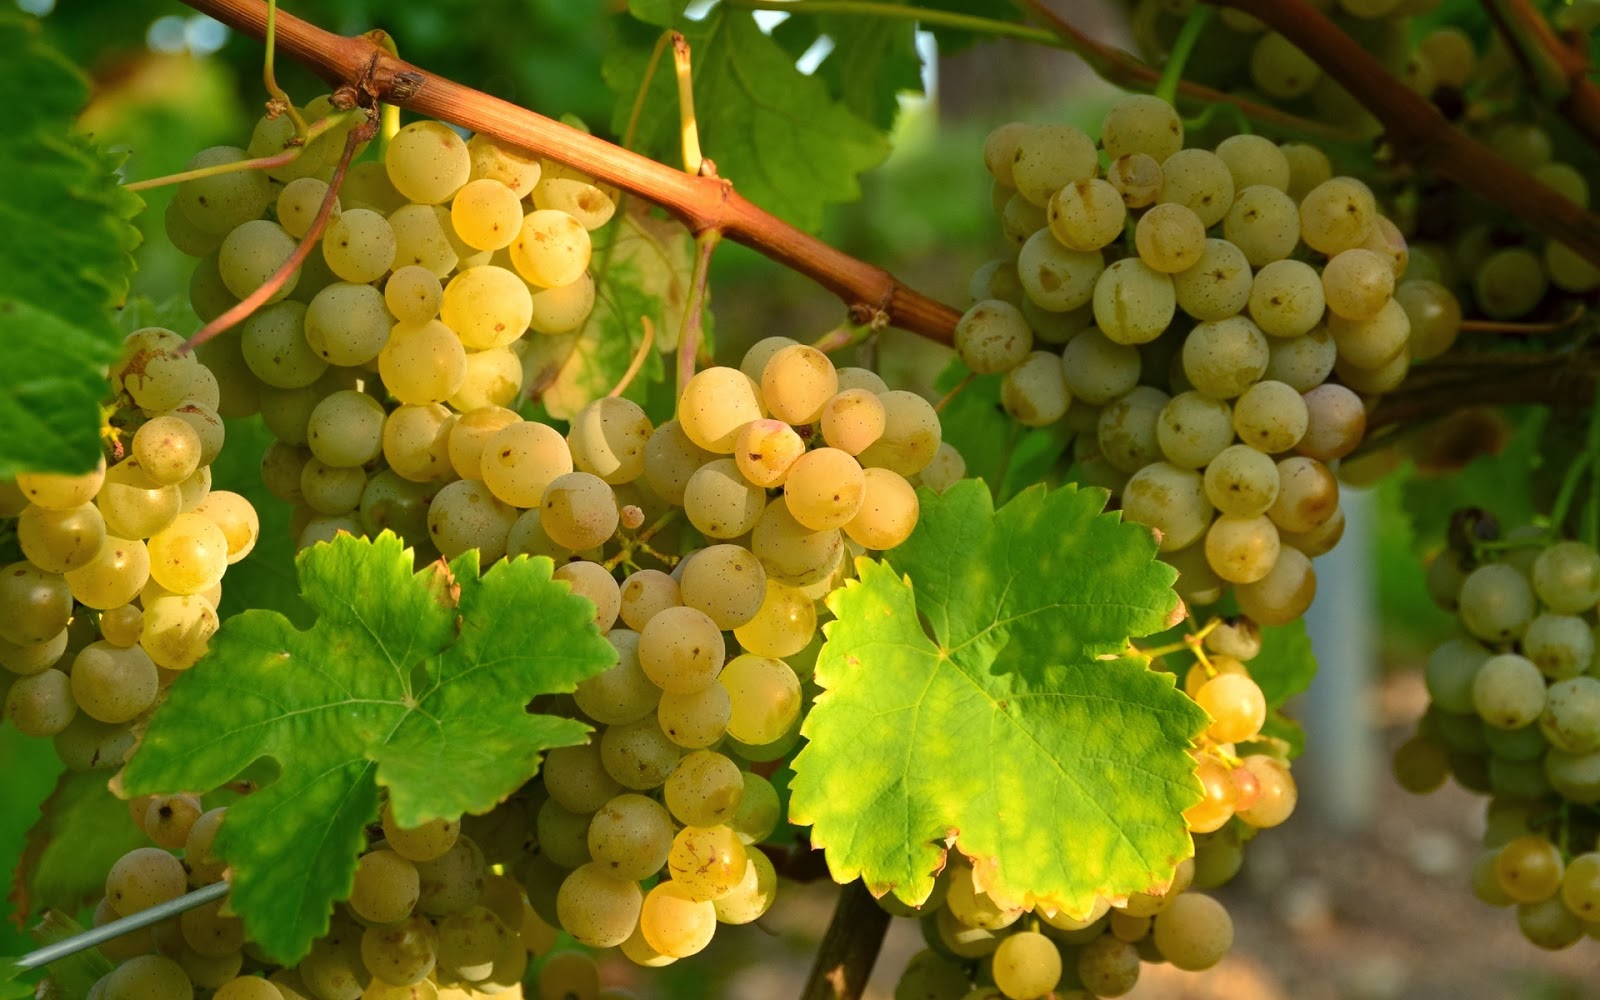 От 4 до 6 леев за килограмм. В Гагаузии цены на виноград значительно выше, чем в прошлом году